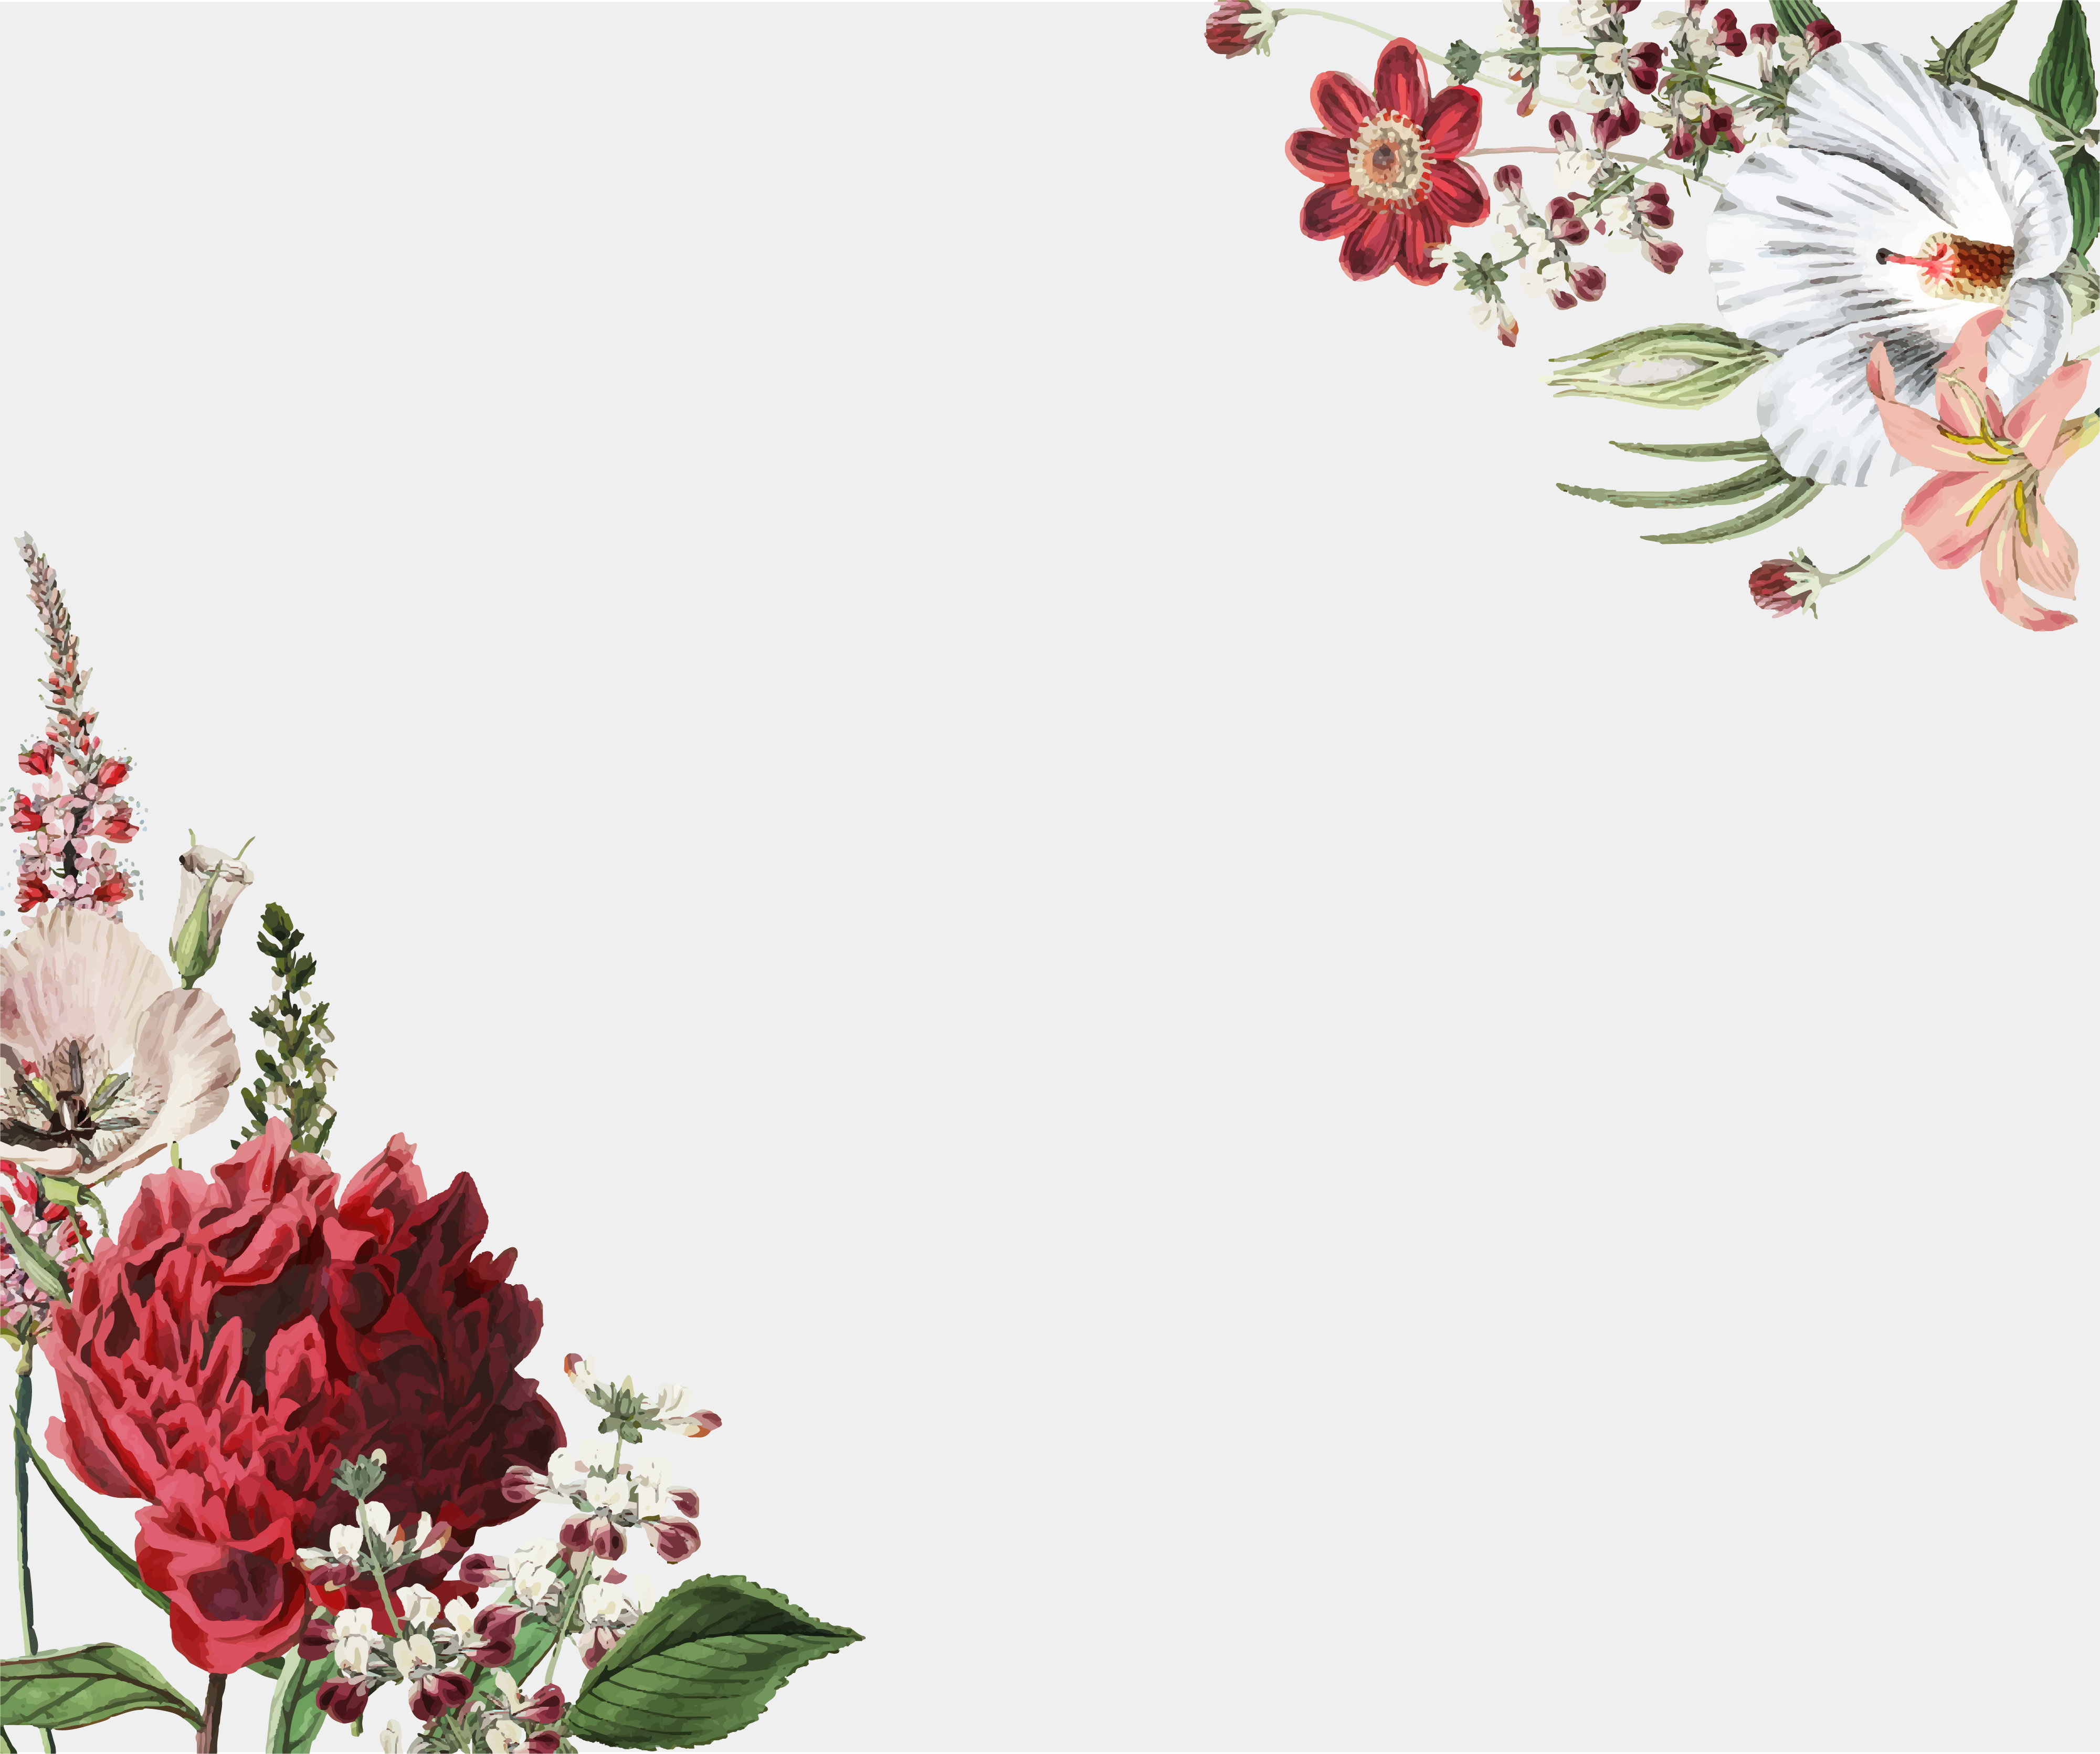 Flower frame design  Download Free Vectors Clipart 